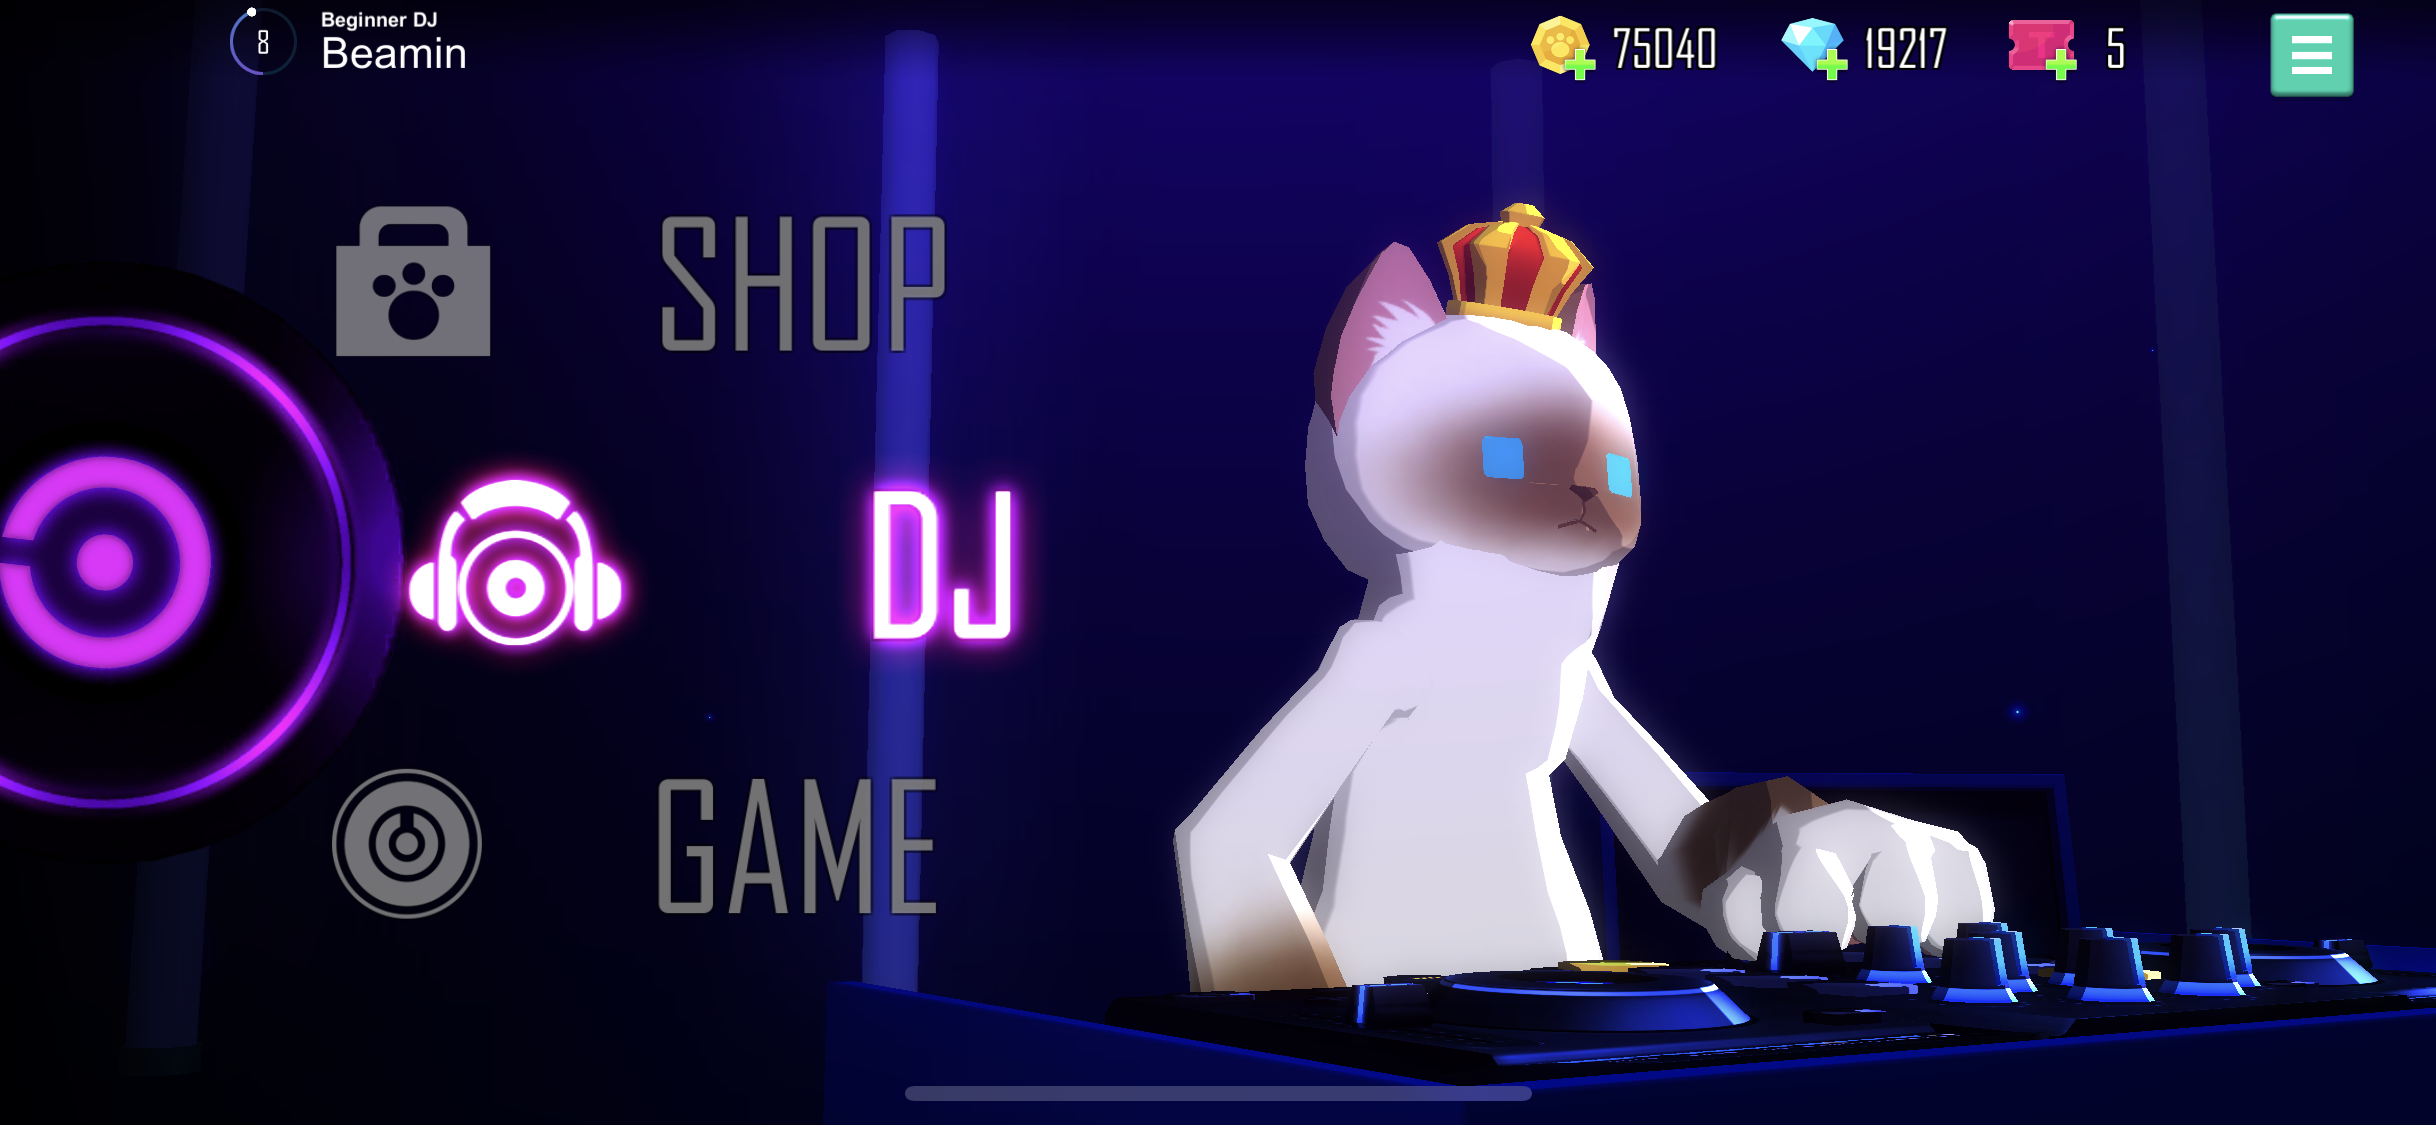 Screenshot 1 of CAT THE DJ - Trò chơi DJ đích thực 1.01.23